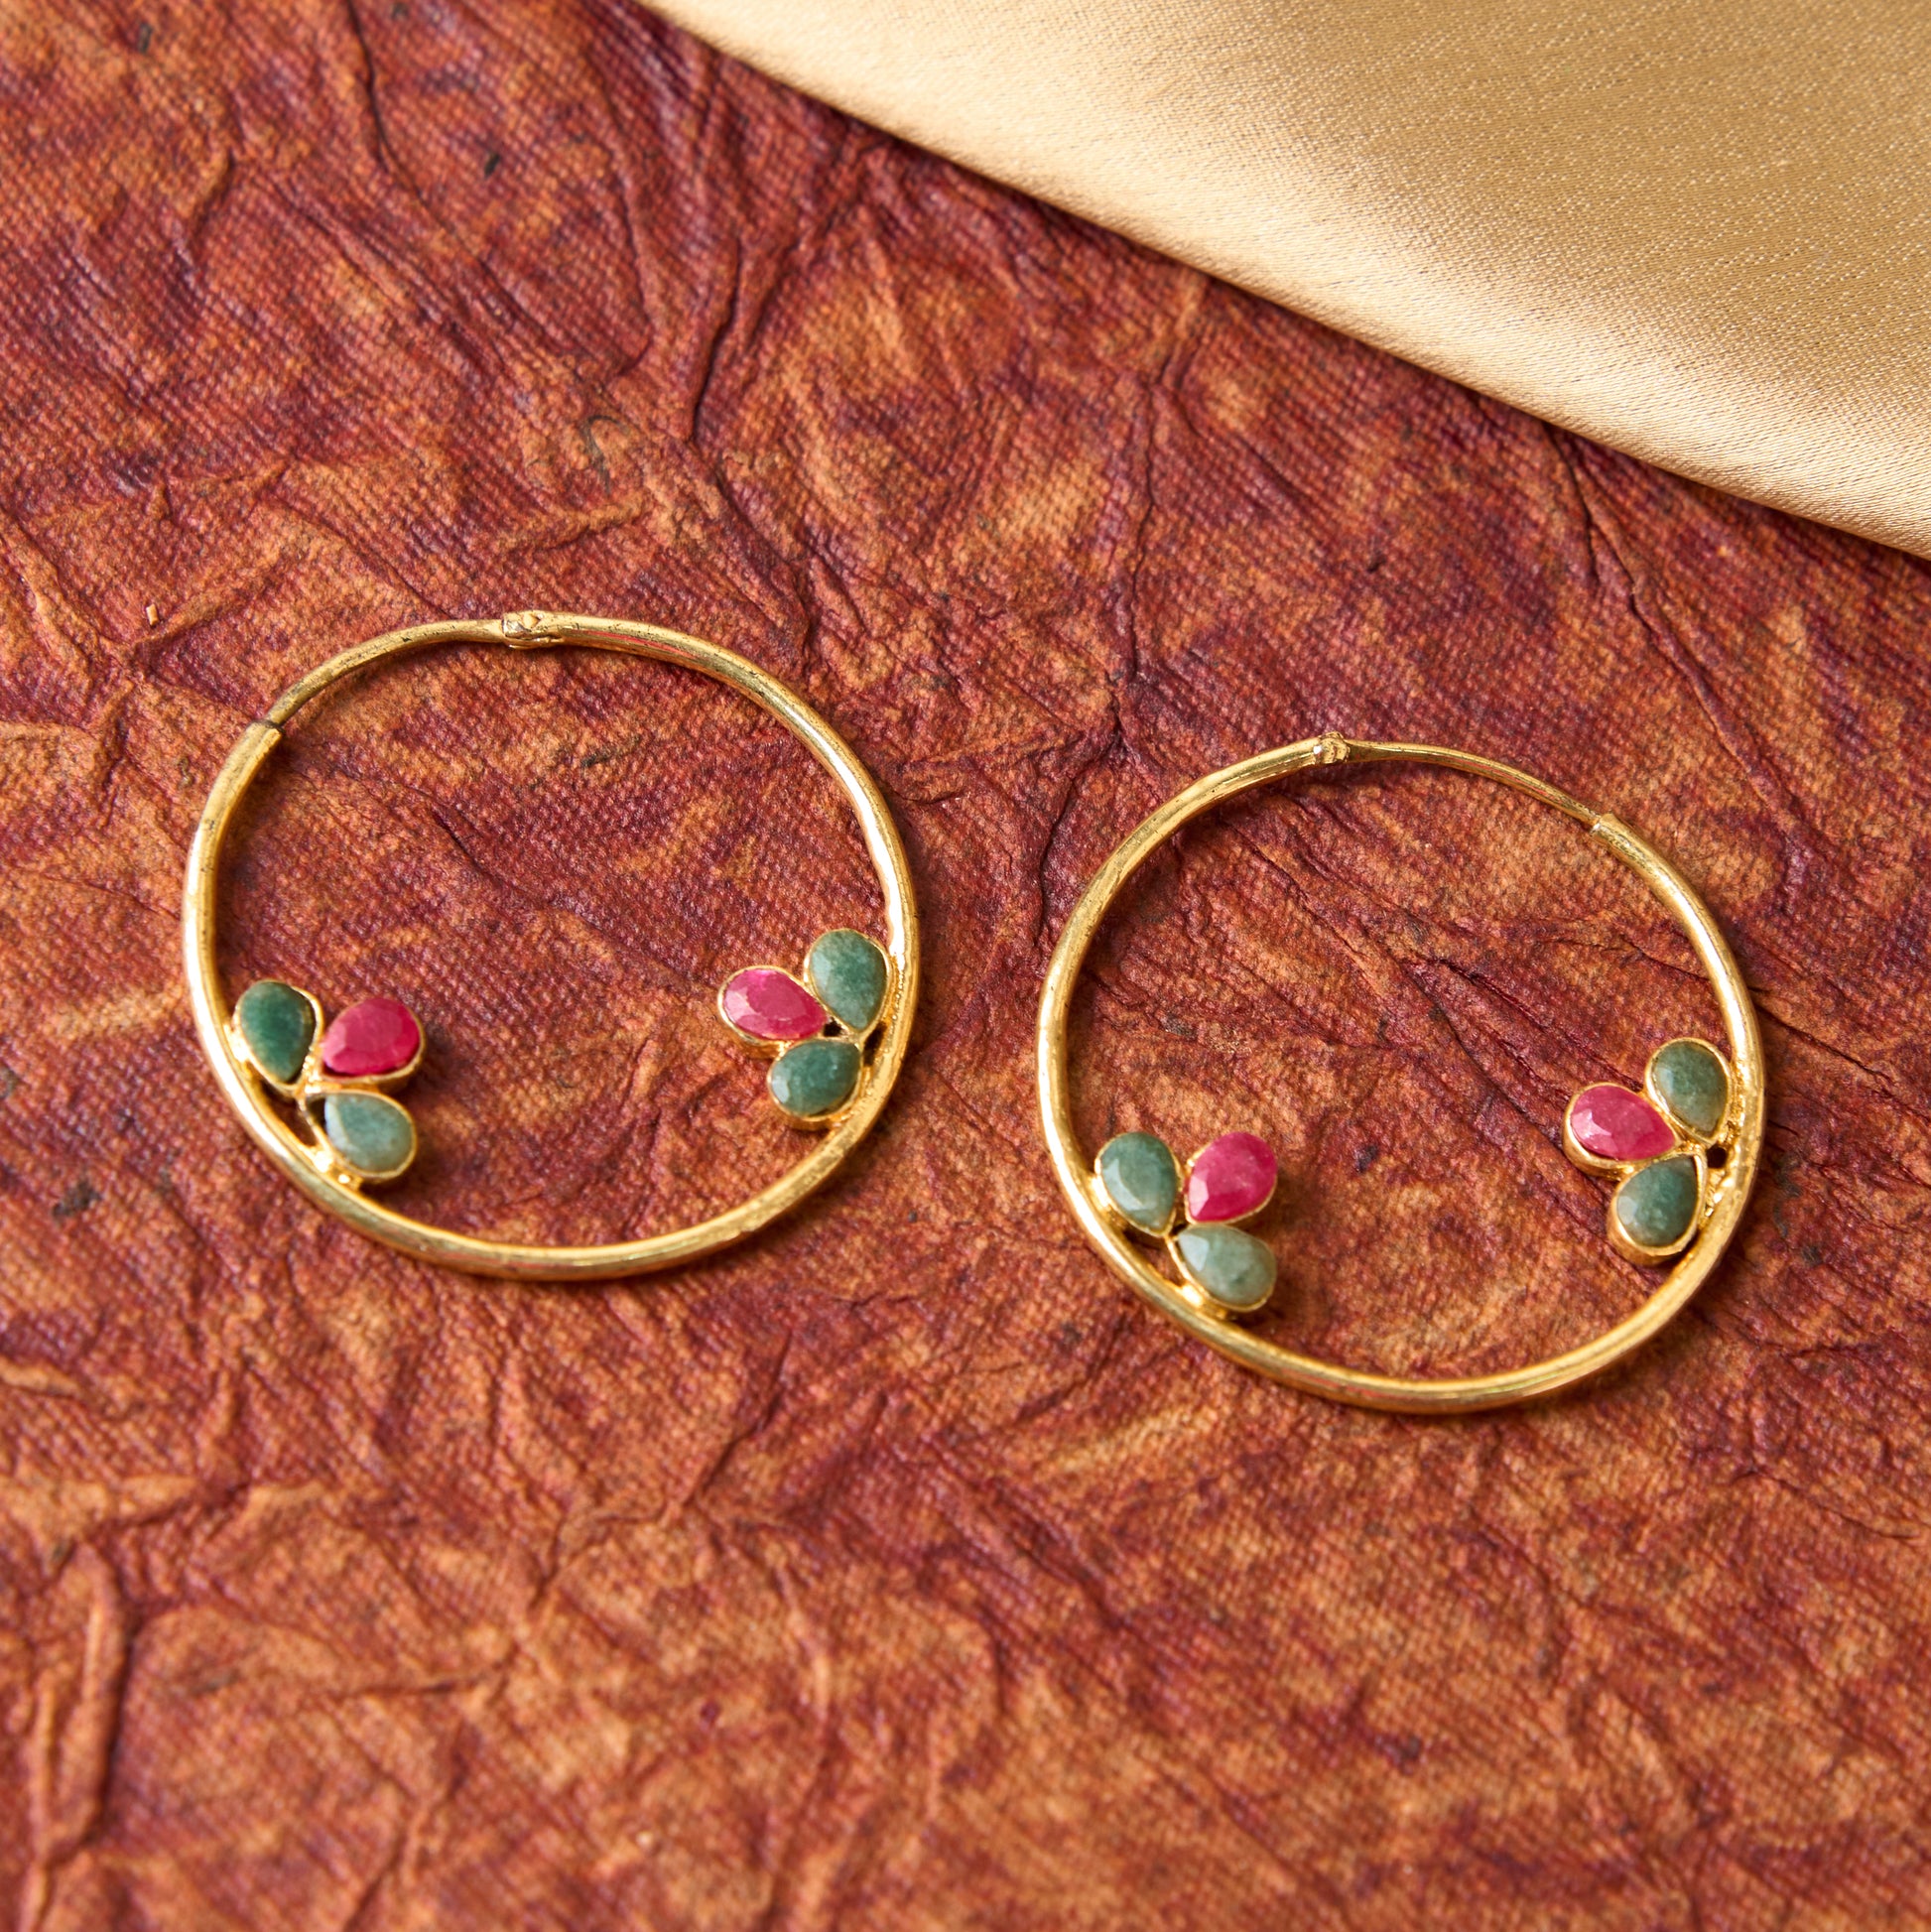 Moonstruck Indo-western Hoop Earrings for Women (Green,Pink) - www.MoonstruckINC.com